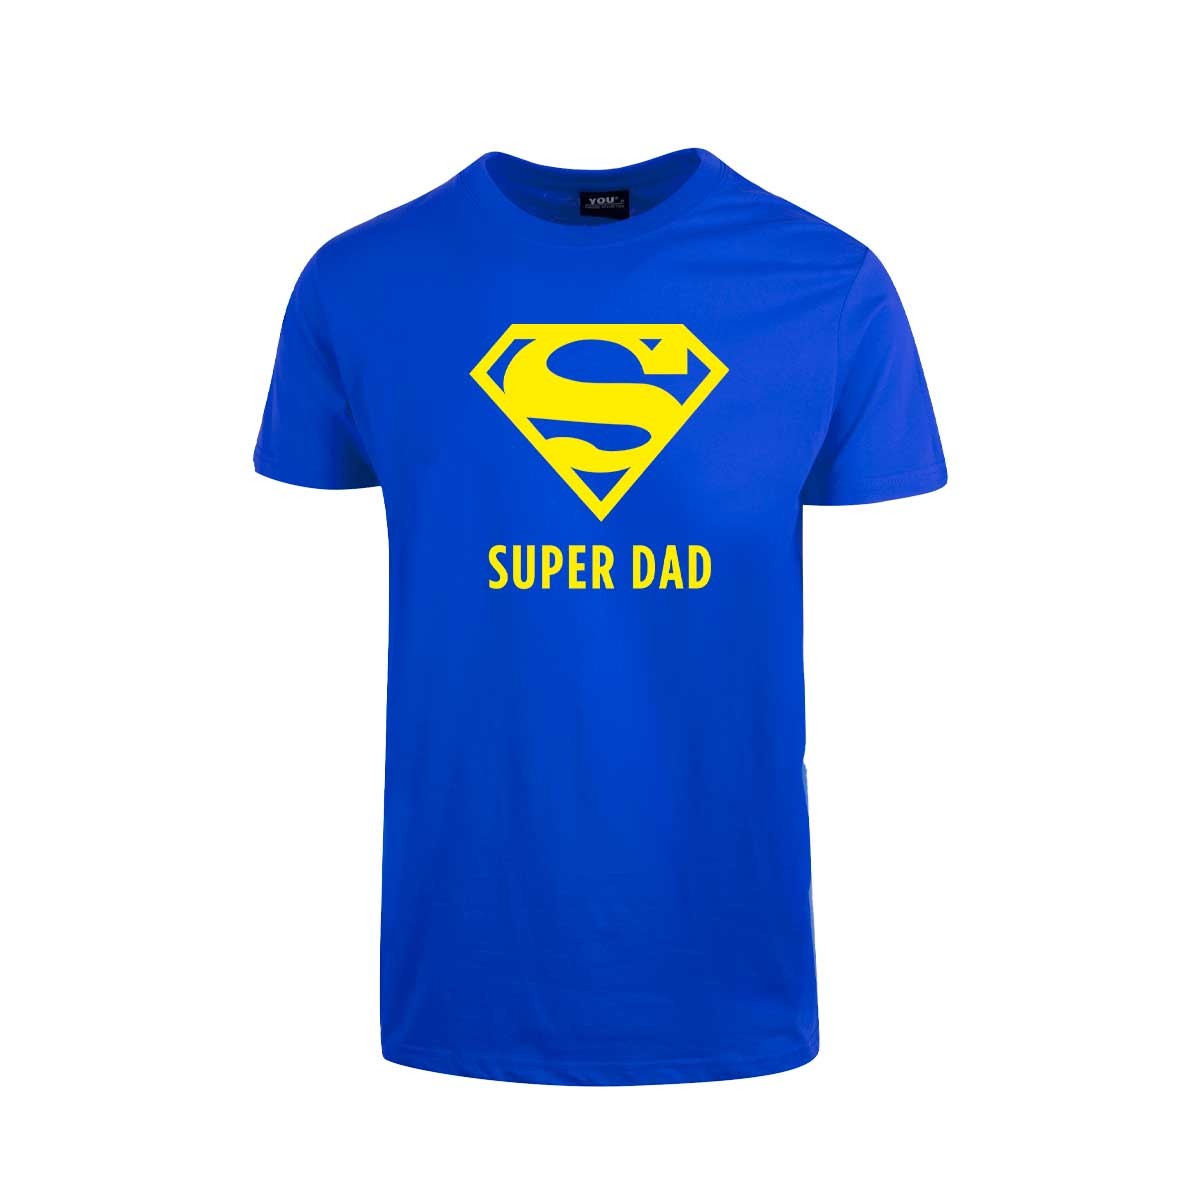 Blå t-skjorte med trykket "Super Dad" i gult